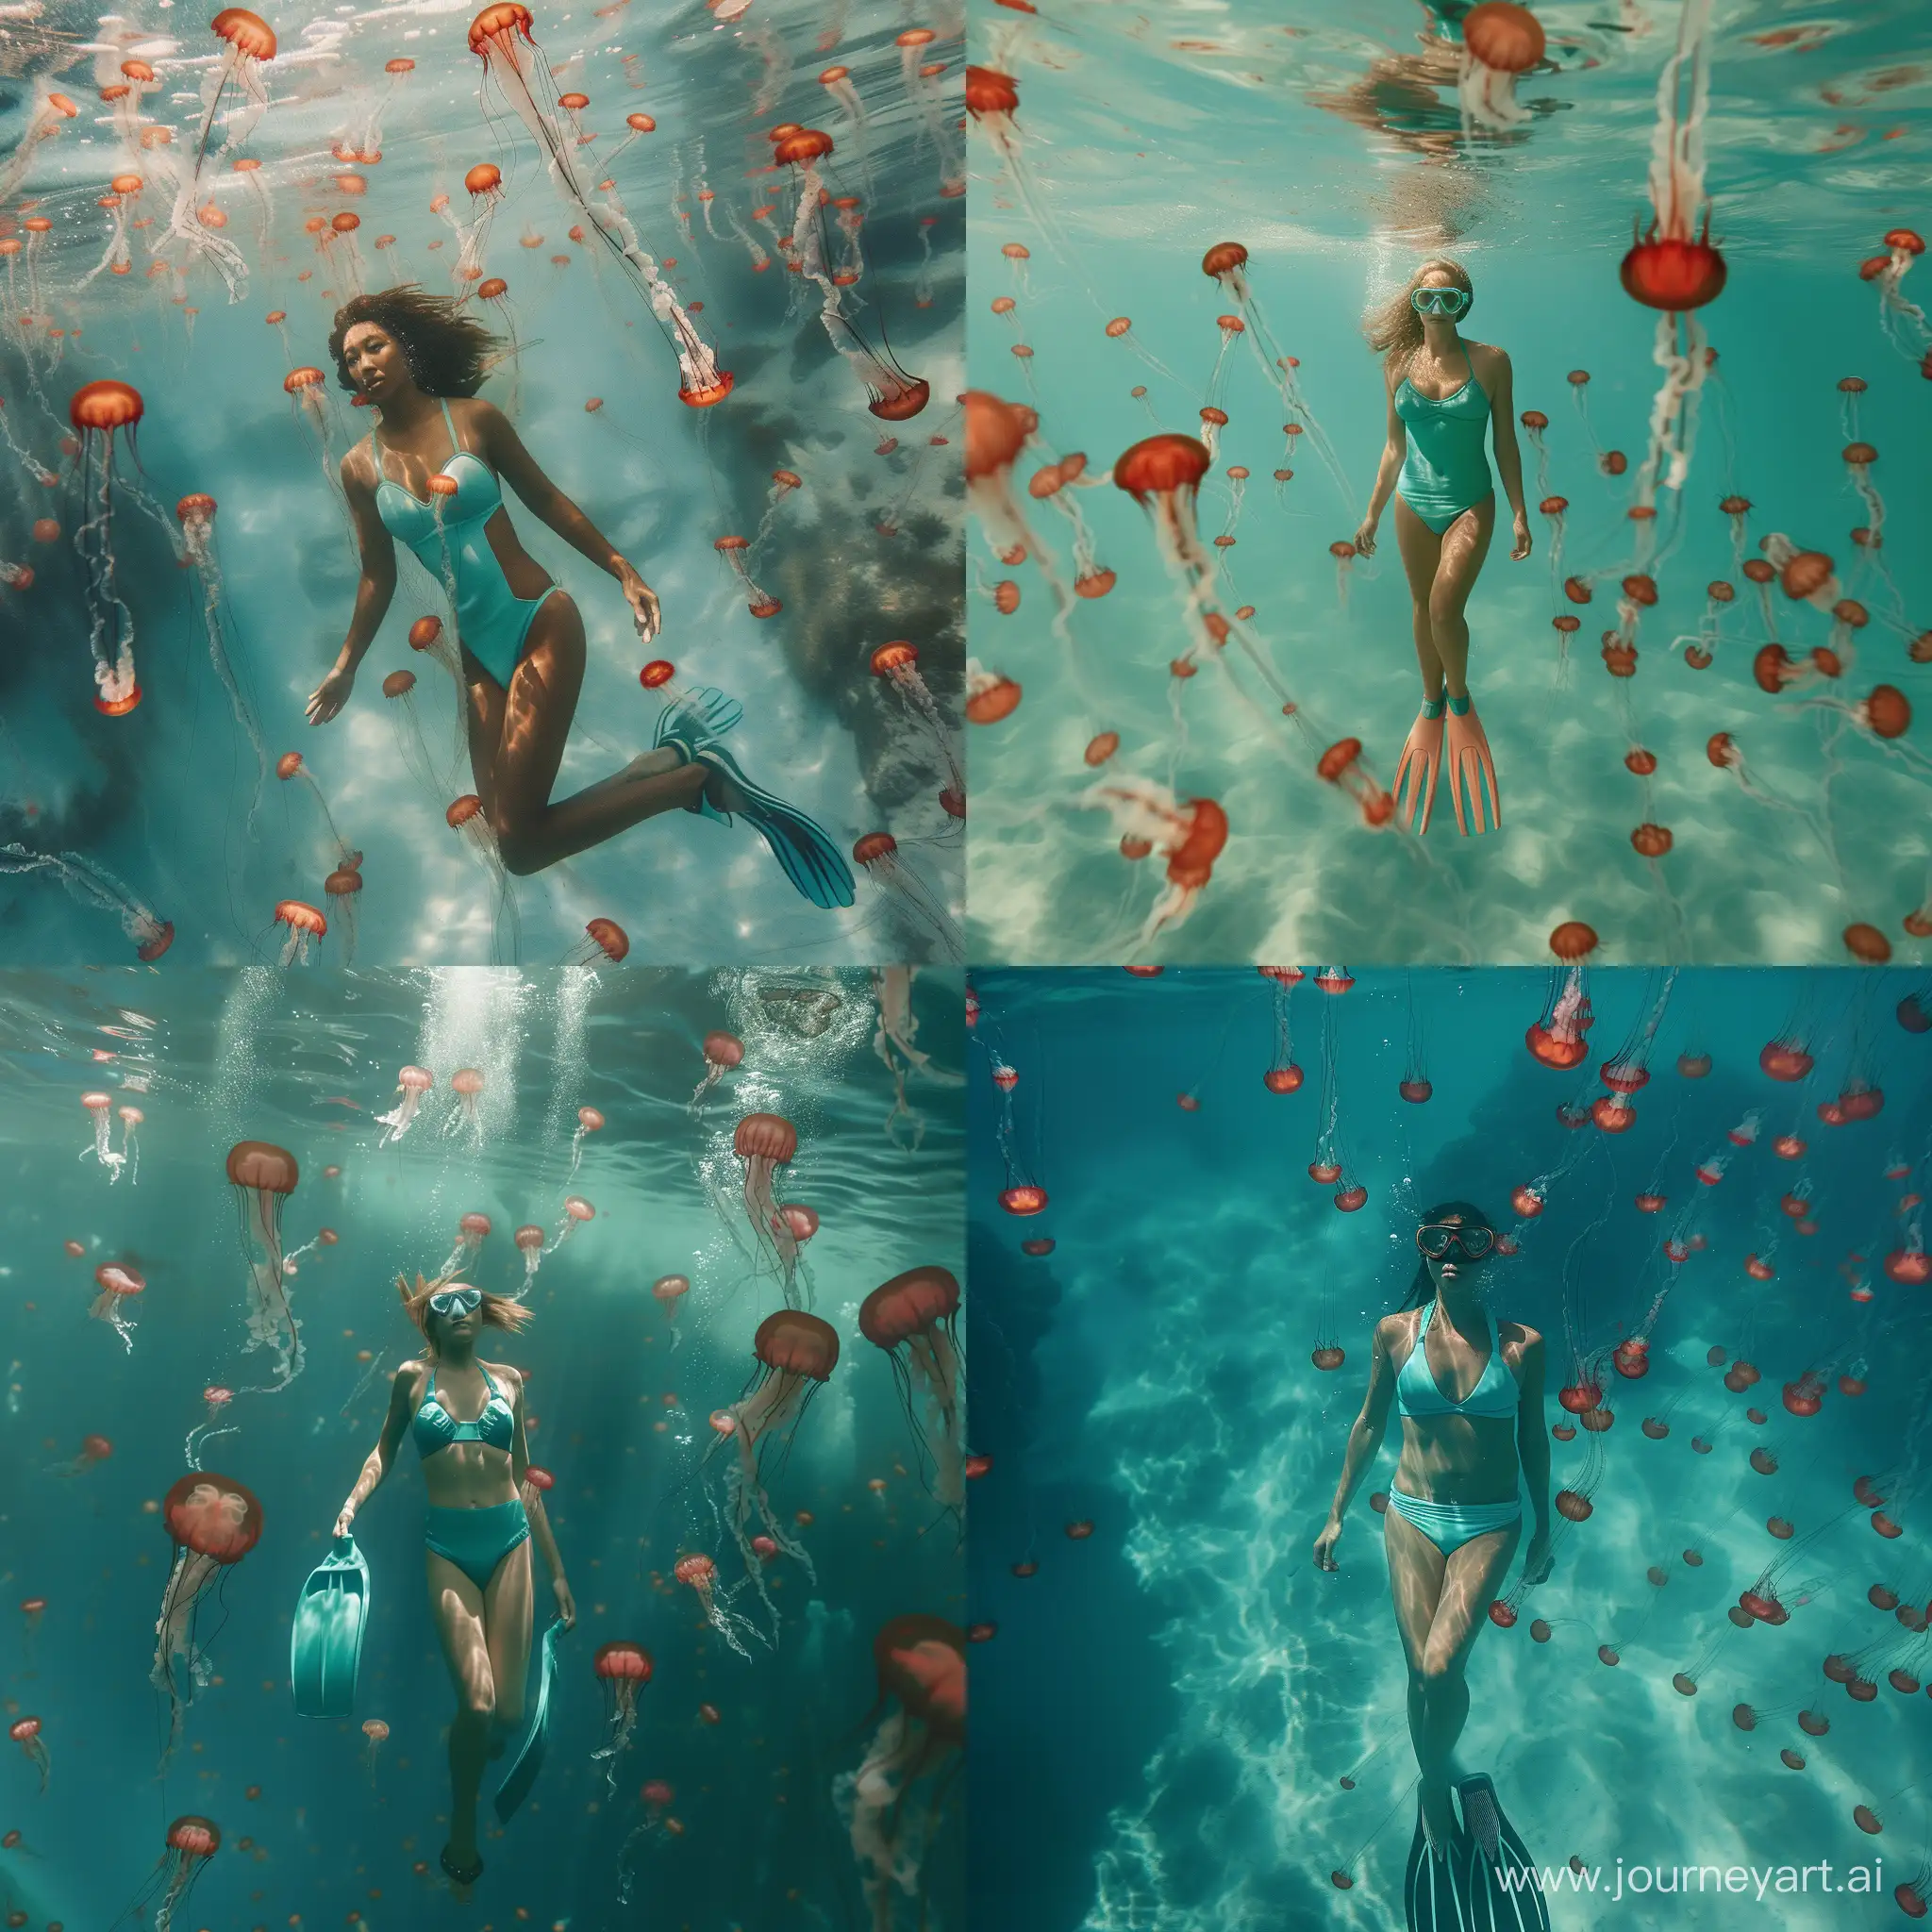 Я плаваю под прозрачной водой в бирюзовом купальнике с ластами. Вокруг меня много красных маленьких медуз. 